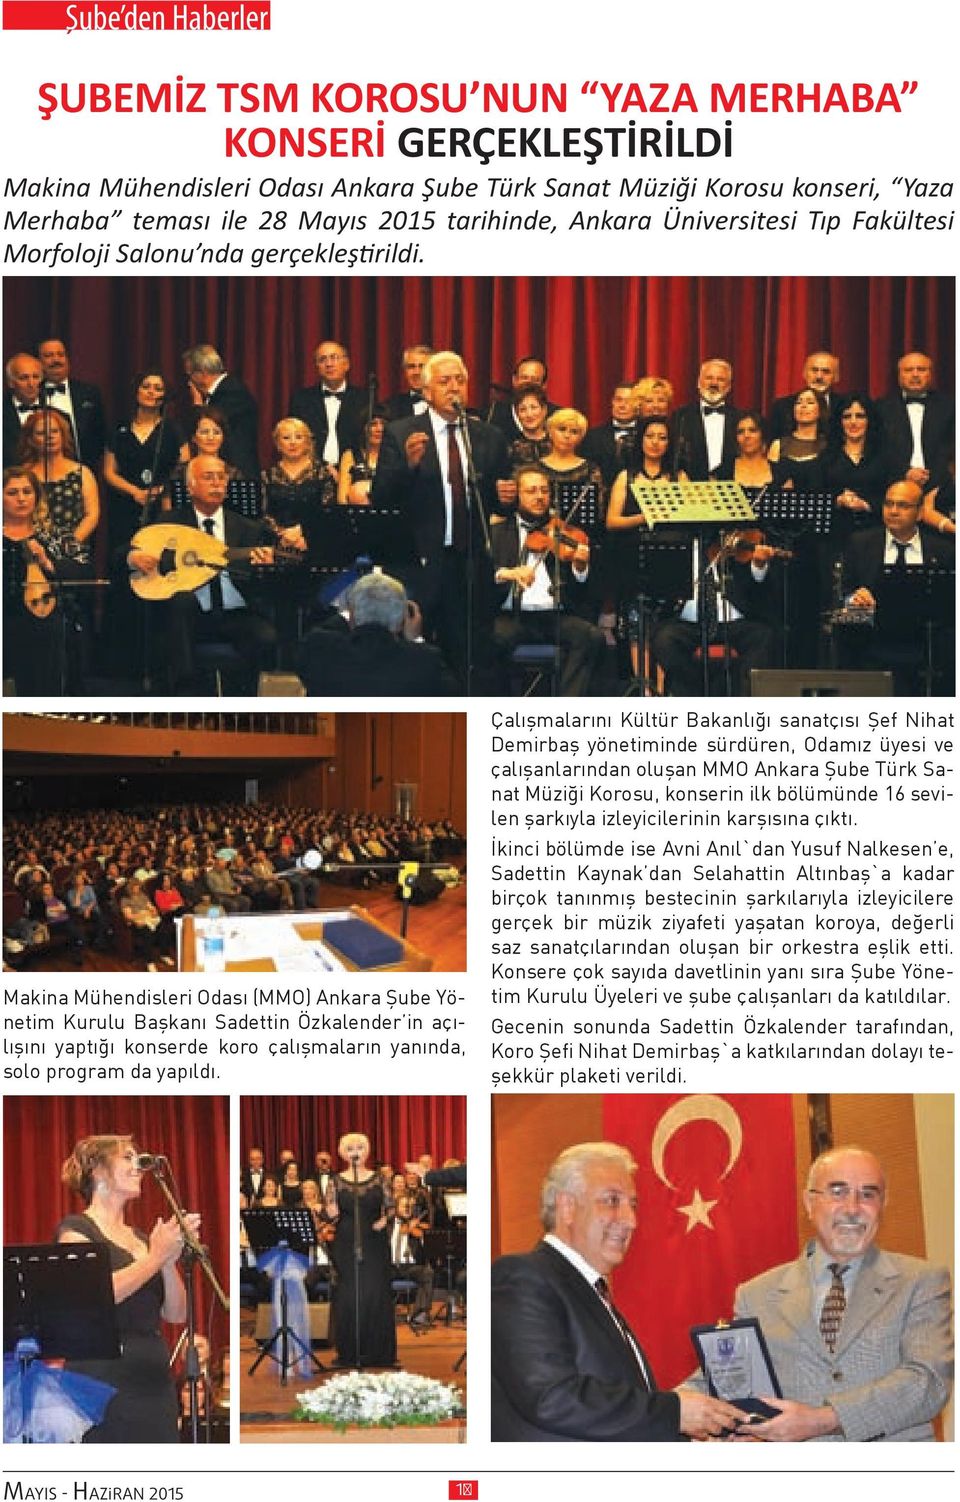 Makina Mühendisleri Odası (MMO) Ankara Şube Yönetim Kurulu Başkanı Sadettin Özkalender in açılışını yaptığı konserde koro çalışmaların yanında, solo program da yapıldı.